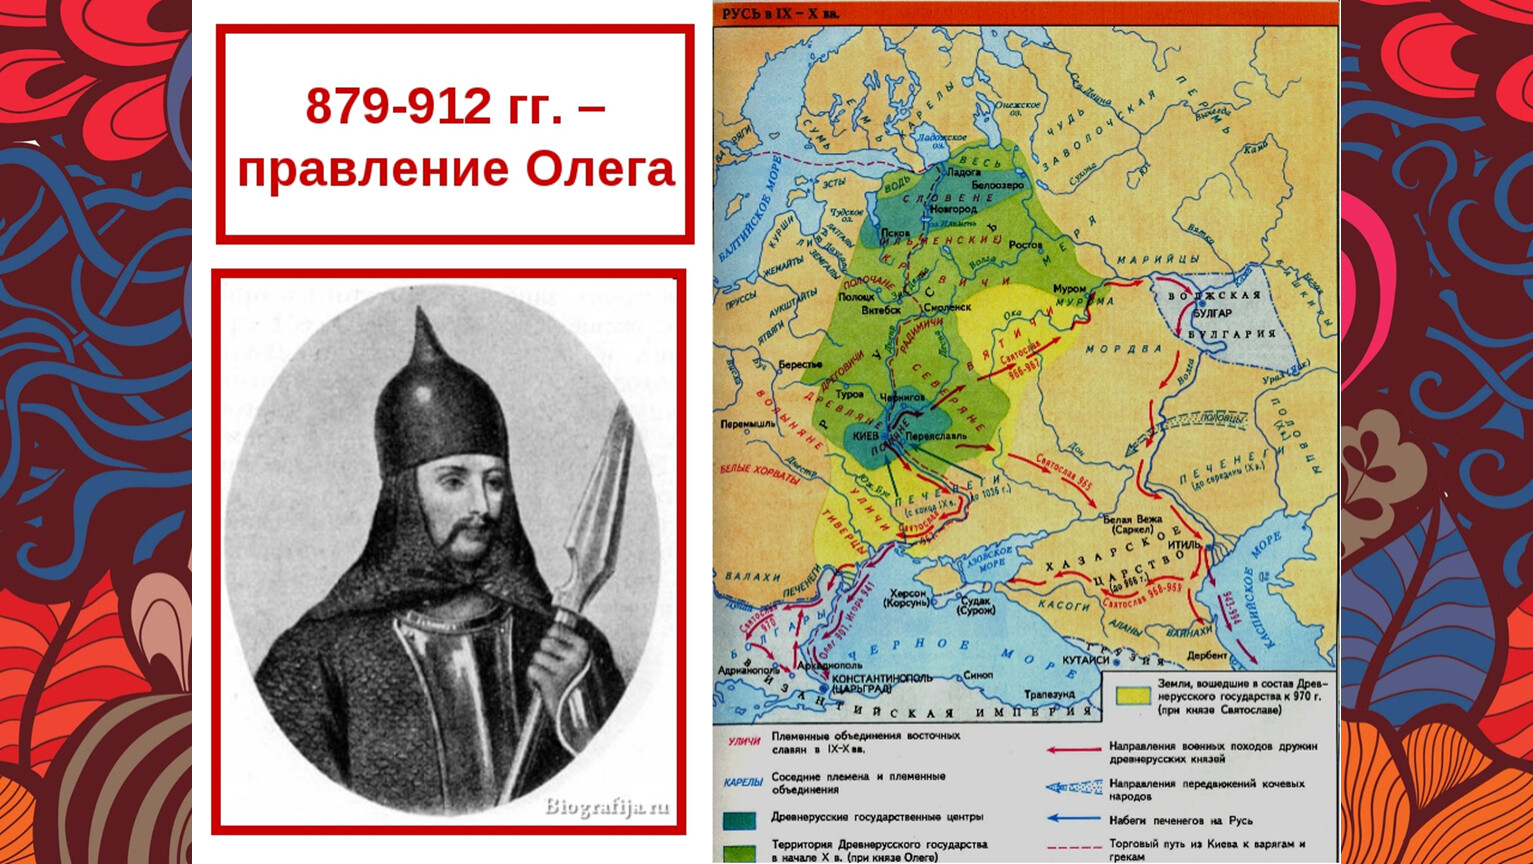 879-912 Гг правление князя Олега